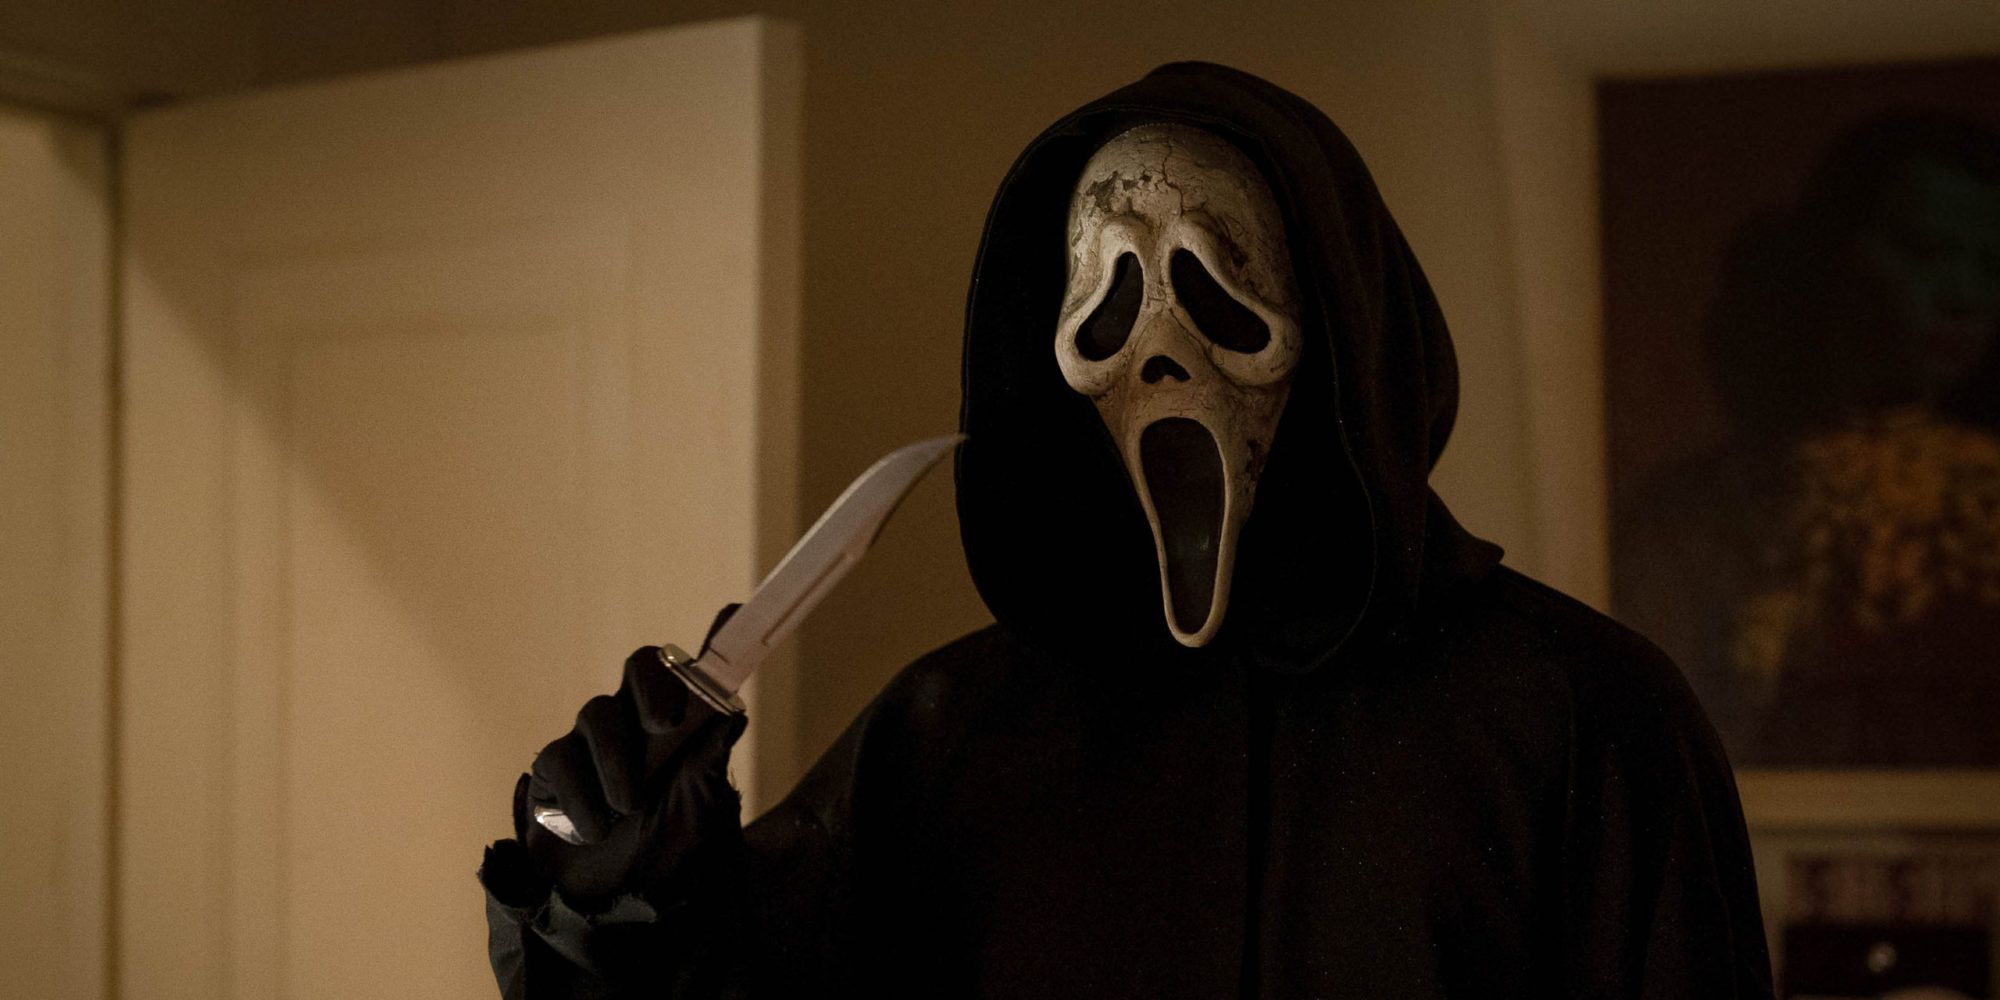 Ghostface holding a knife in Scream